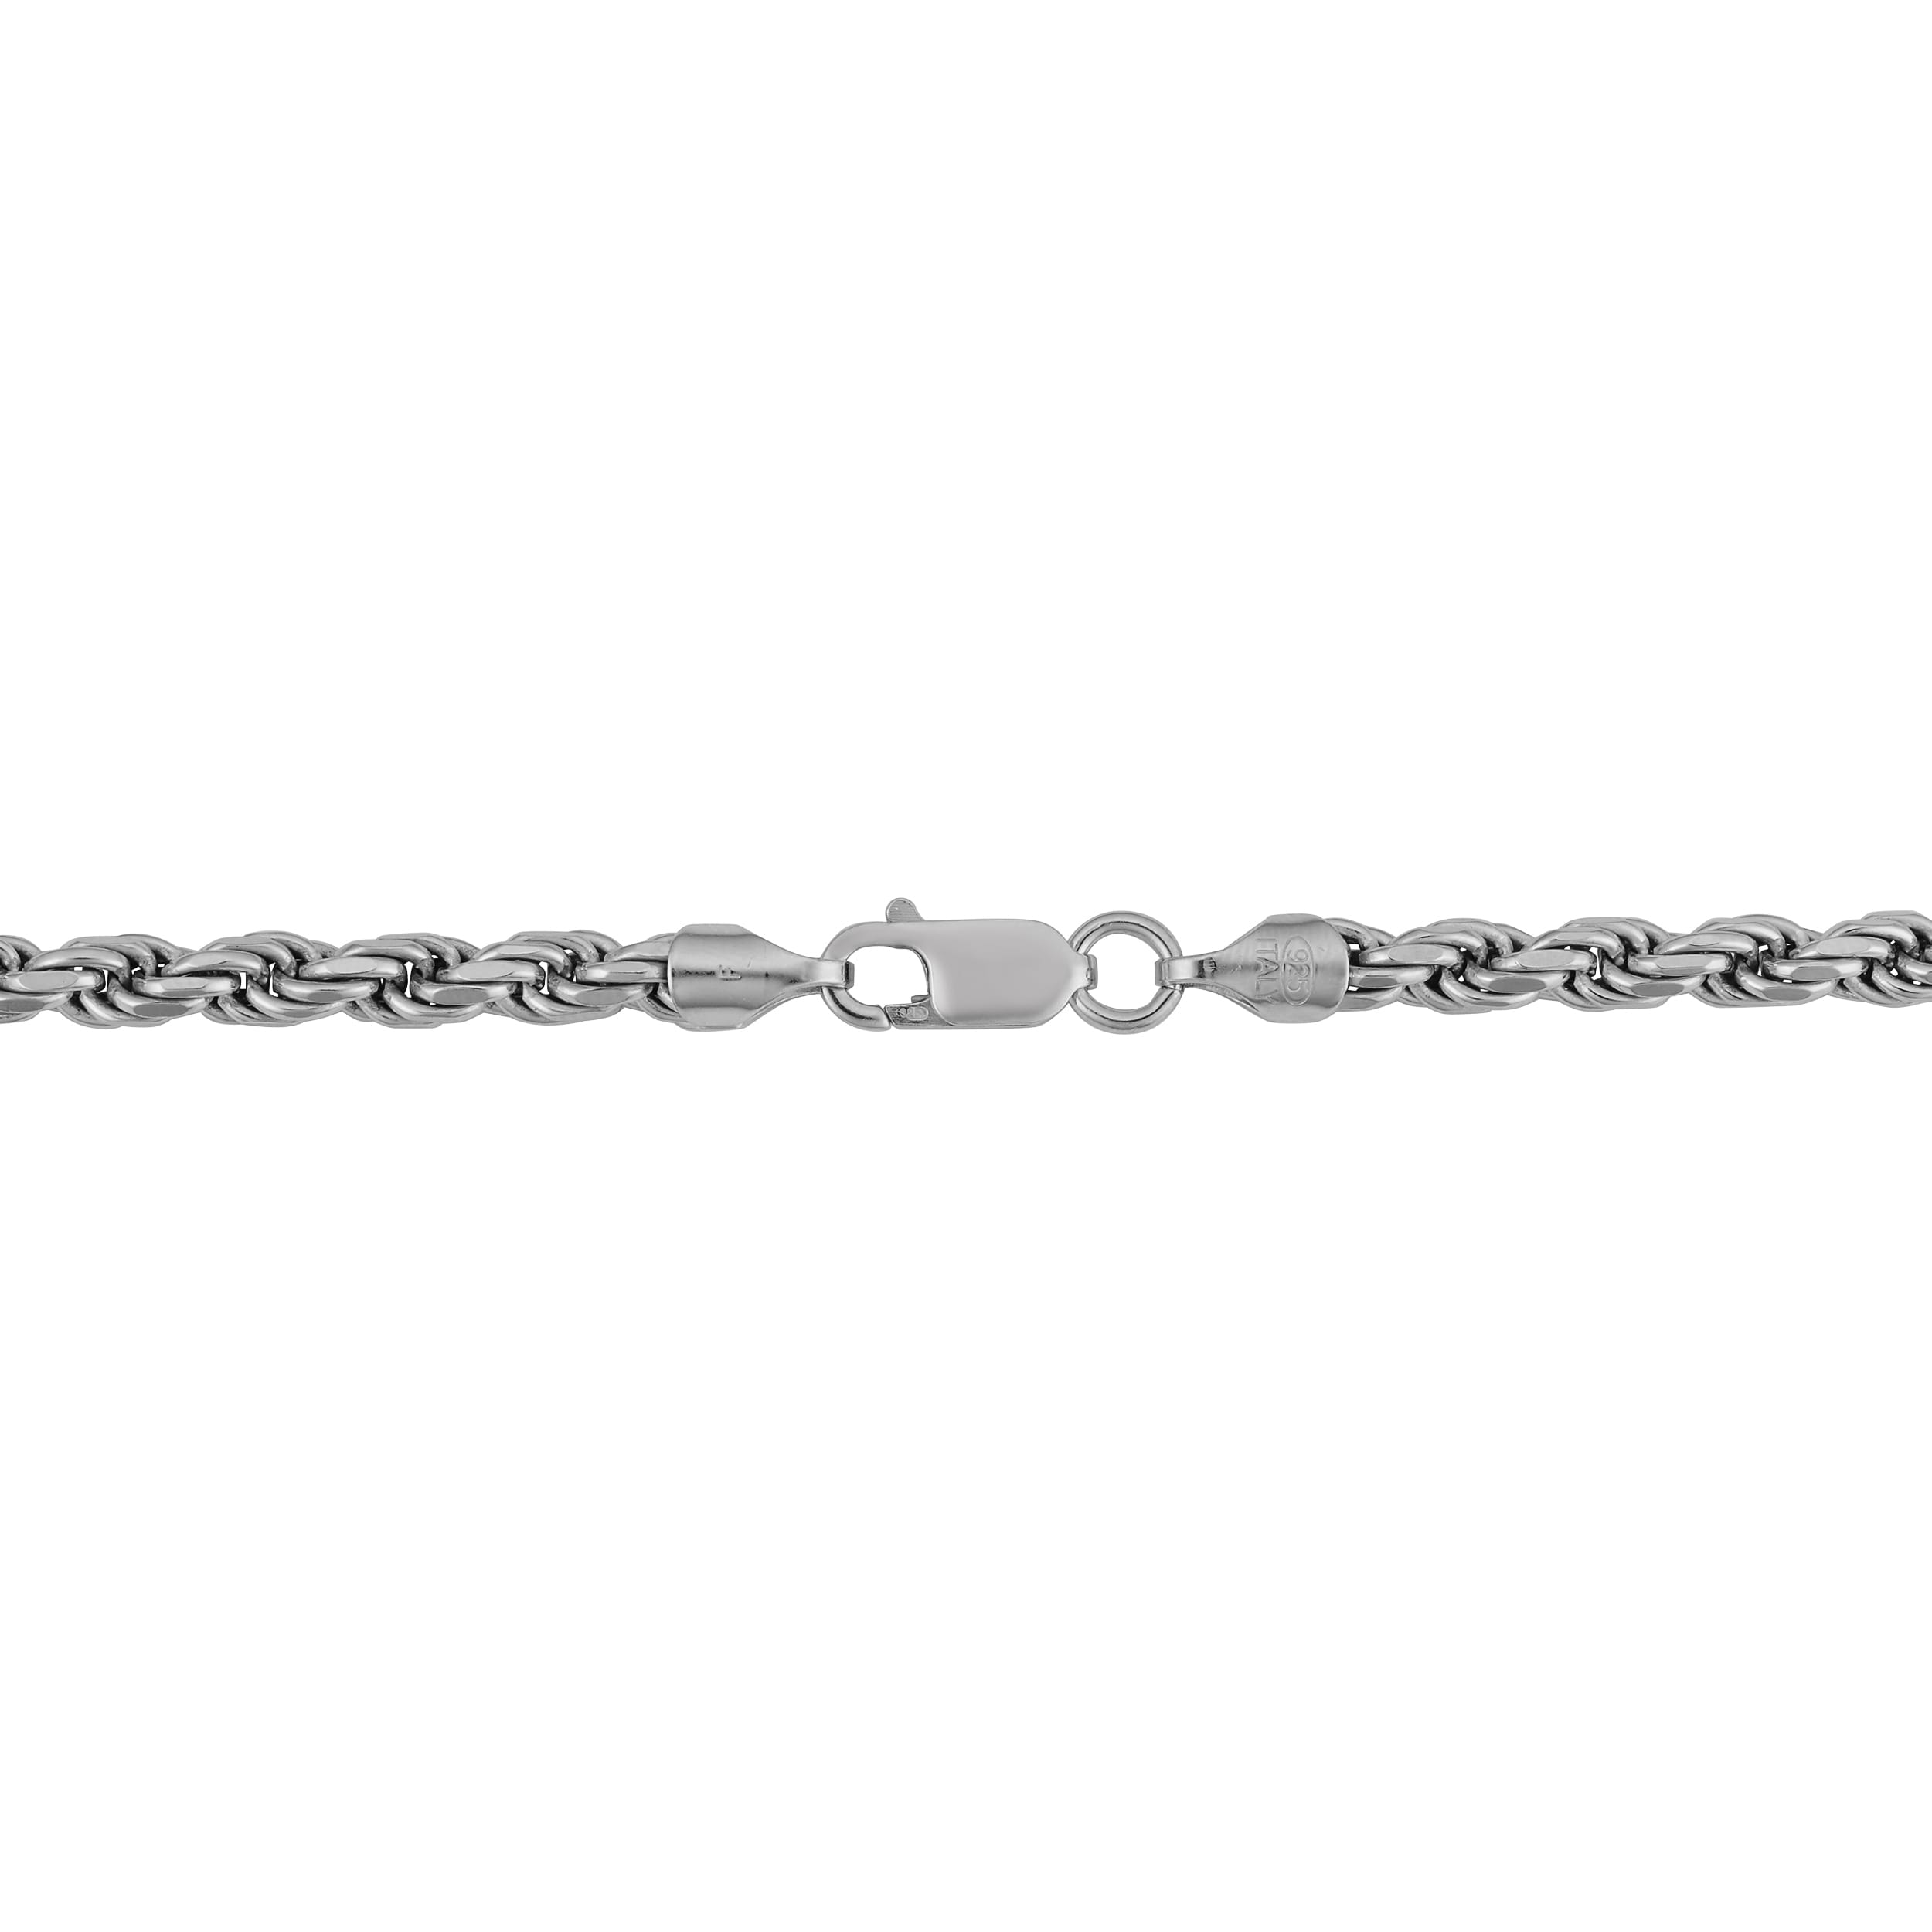 18 Inch Silver Chain with 4 Cz Randels DiamondJewelryNY Silver Chain